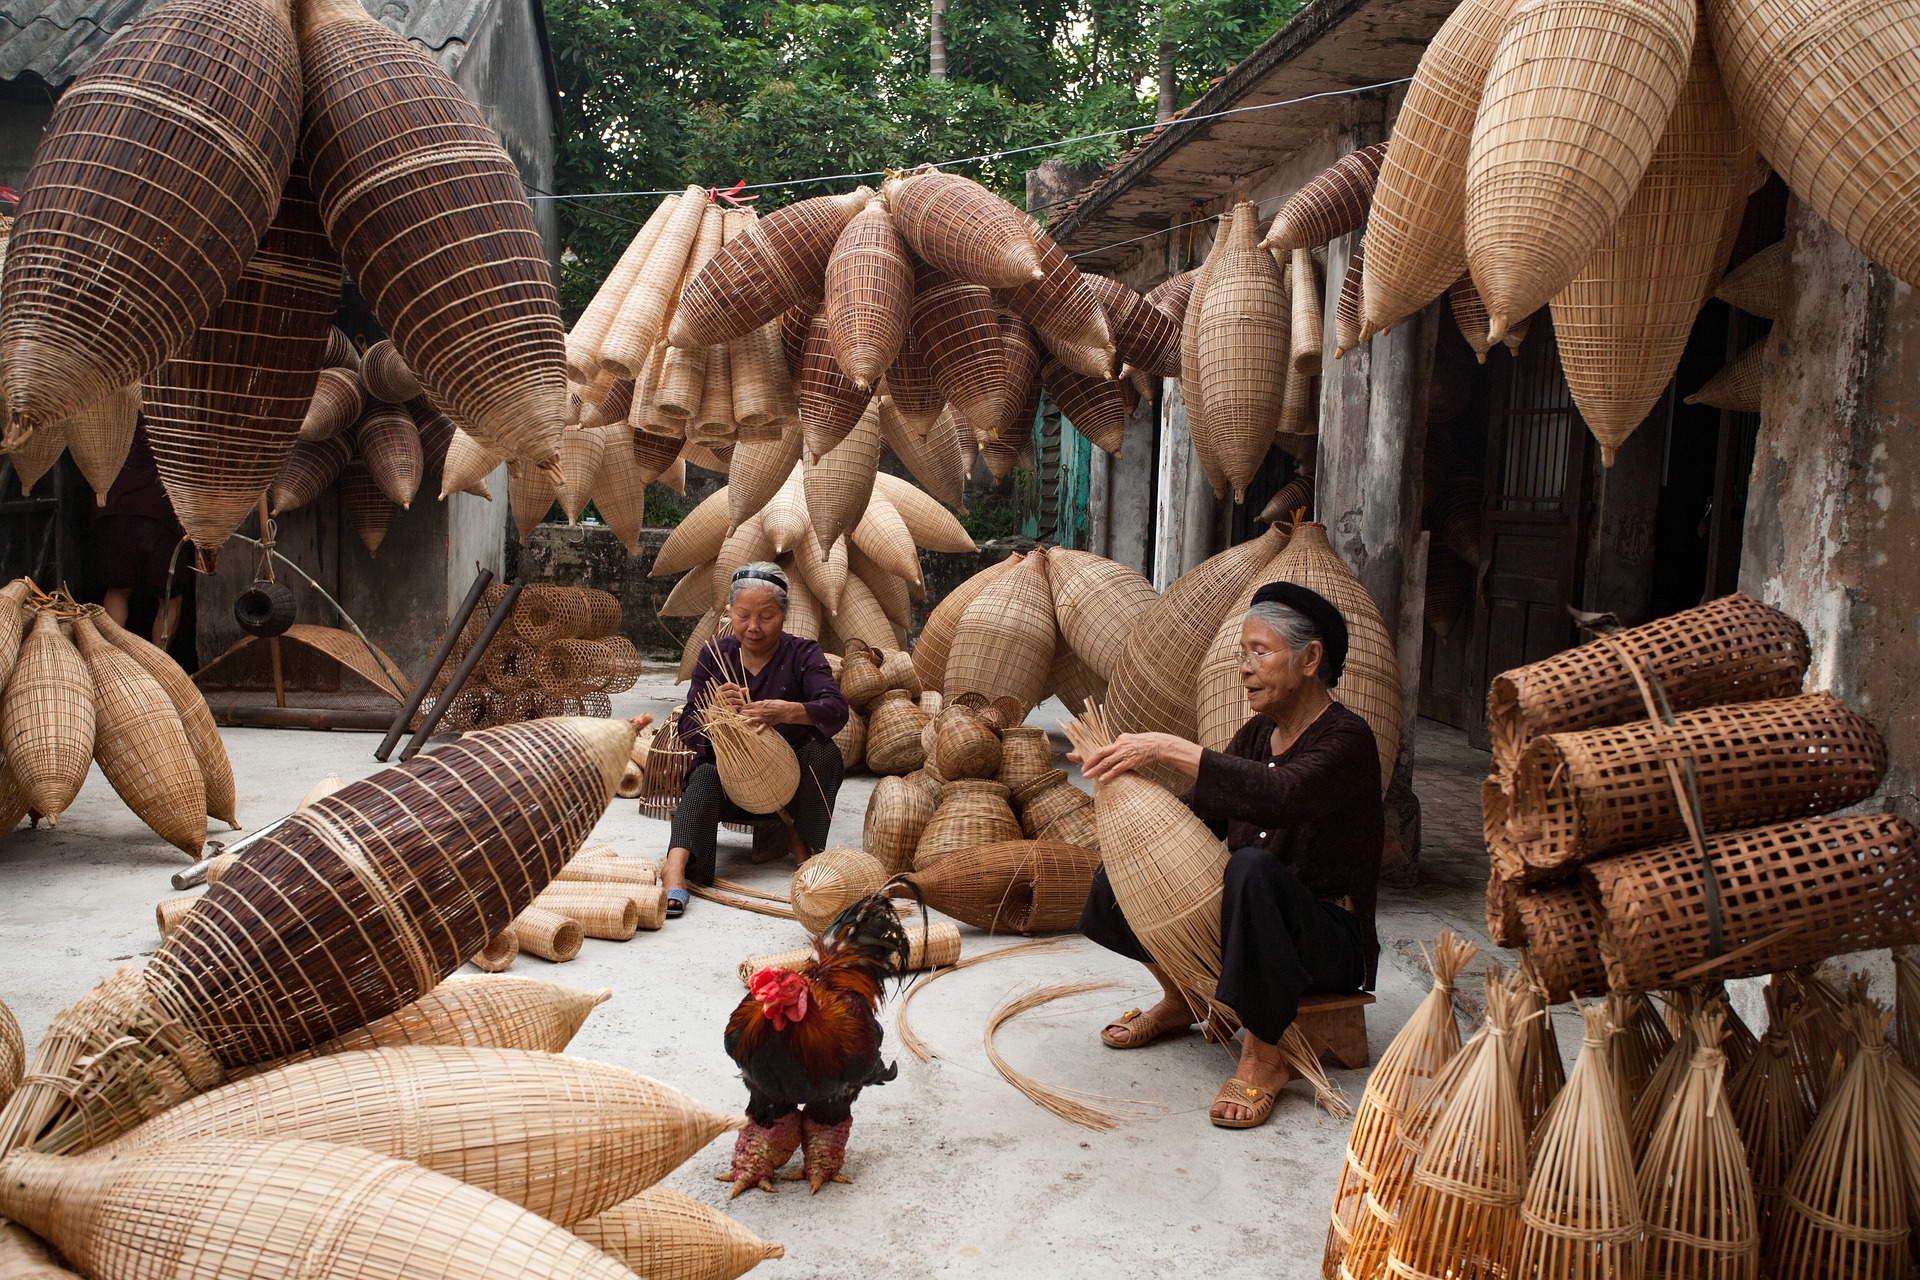 Szene aus Vietnam. Zwei Frauen flechten auf dem Boden sitzend Körbe aus Holz; um sie herum hängen viele Körbe.